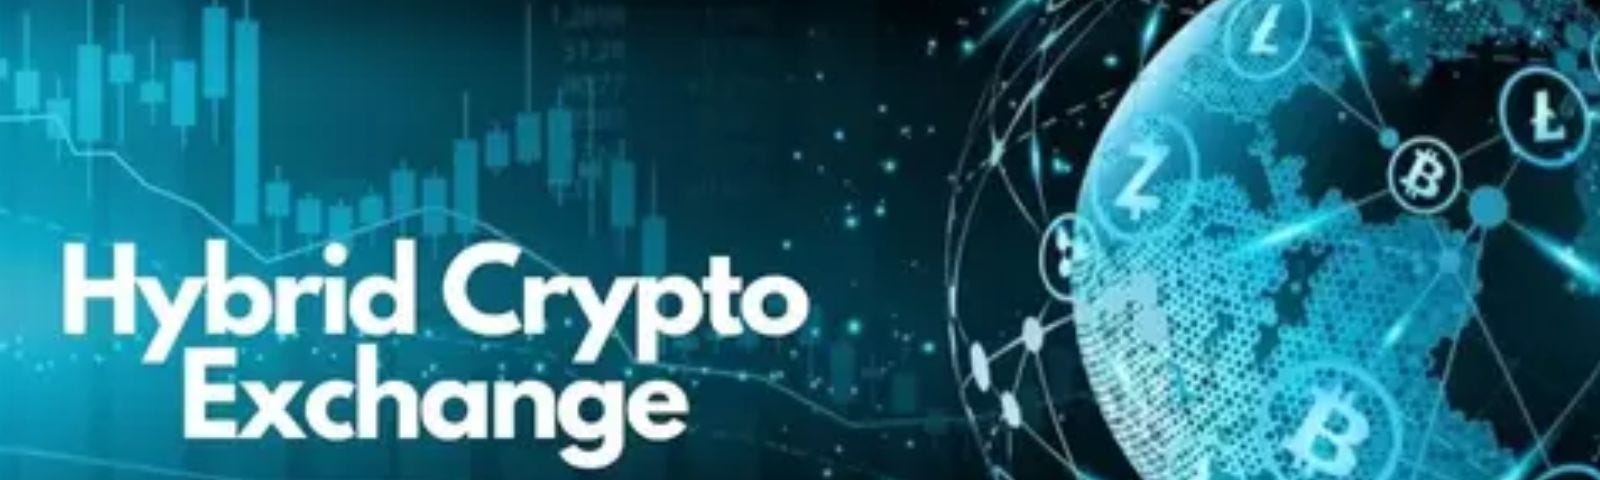 Hybrid Crypto Exchanges